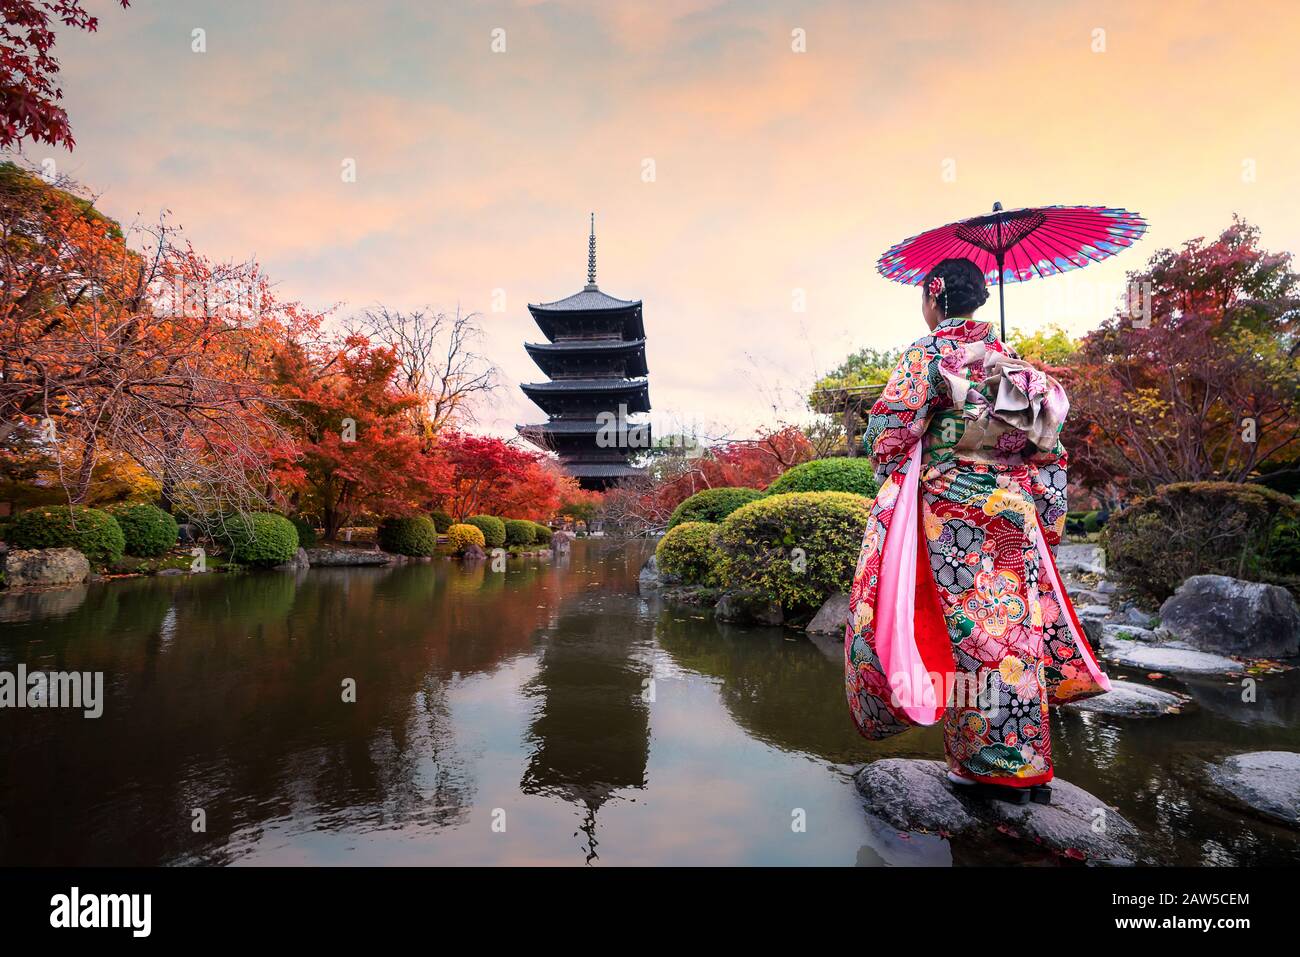 Jeune fille japonaise voyageur dans la robe kimino traditionnelle debout dans le temple Toji avec pagode en bois et feuille d'érable rouge en automne saison à Kyoto, Jap Banque D'Images